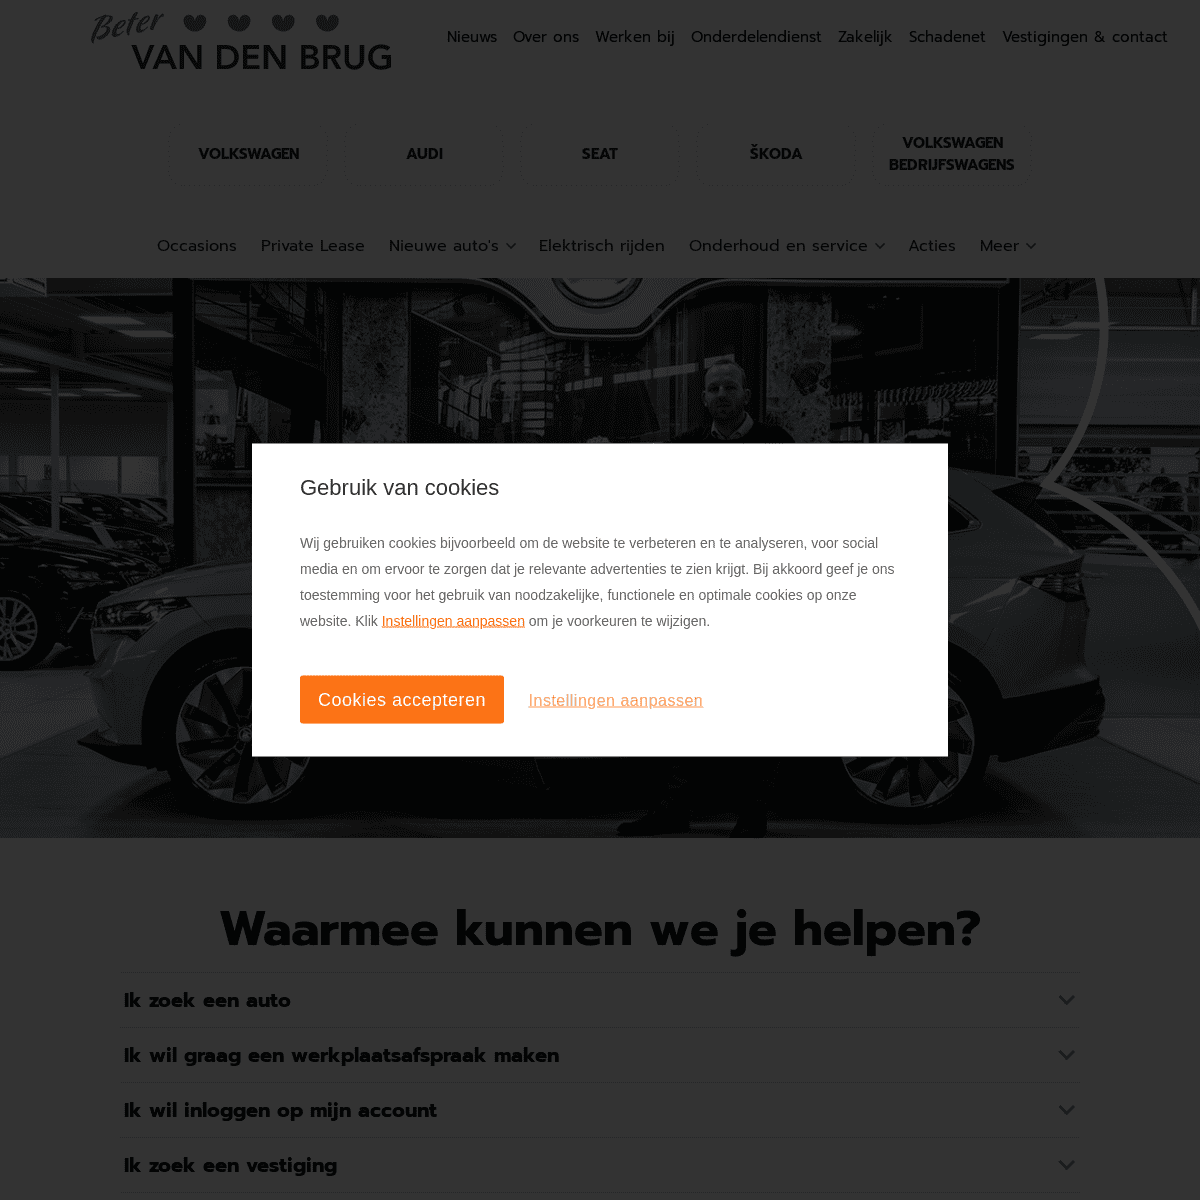 A complete backup of https://vandenbrug.nl